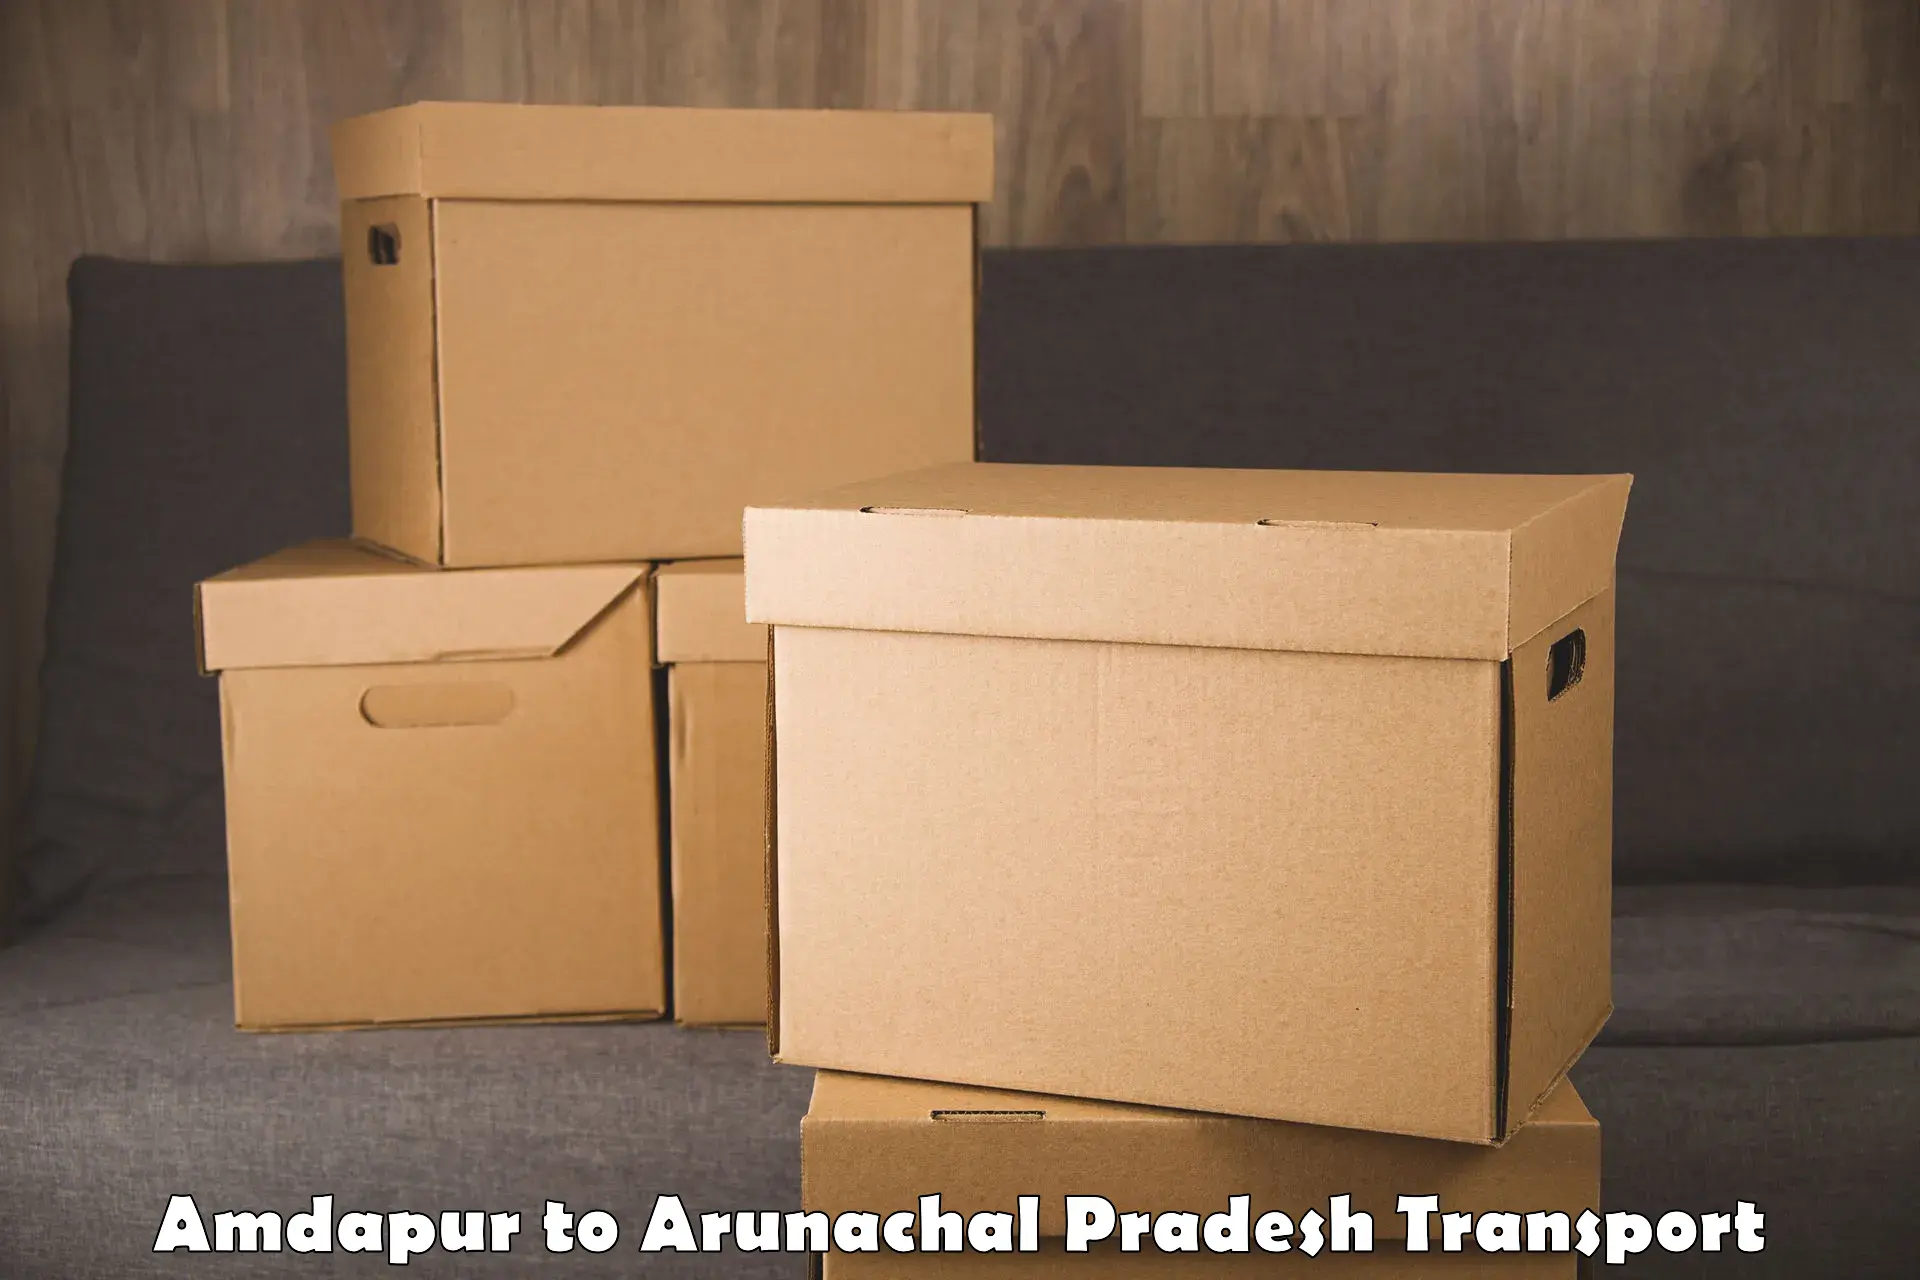 Truck transport companies in India Amdapur to Kurung Kumey